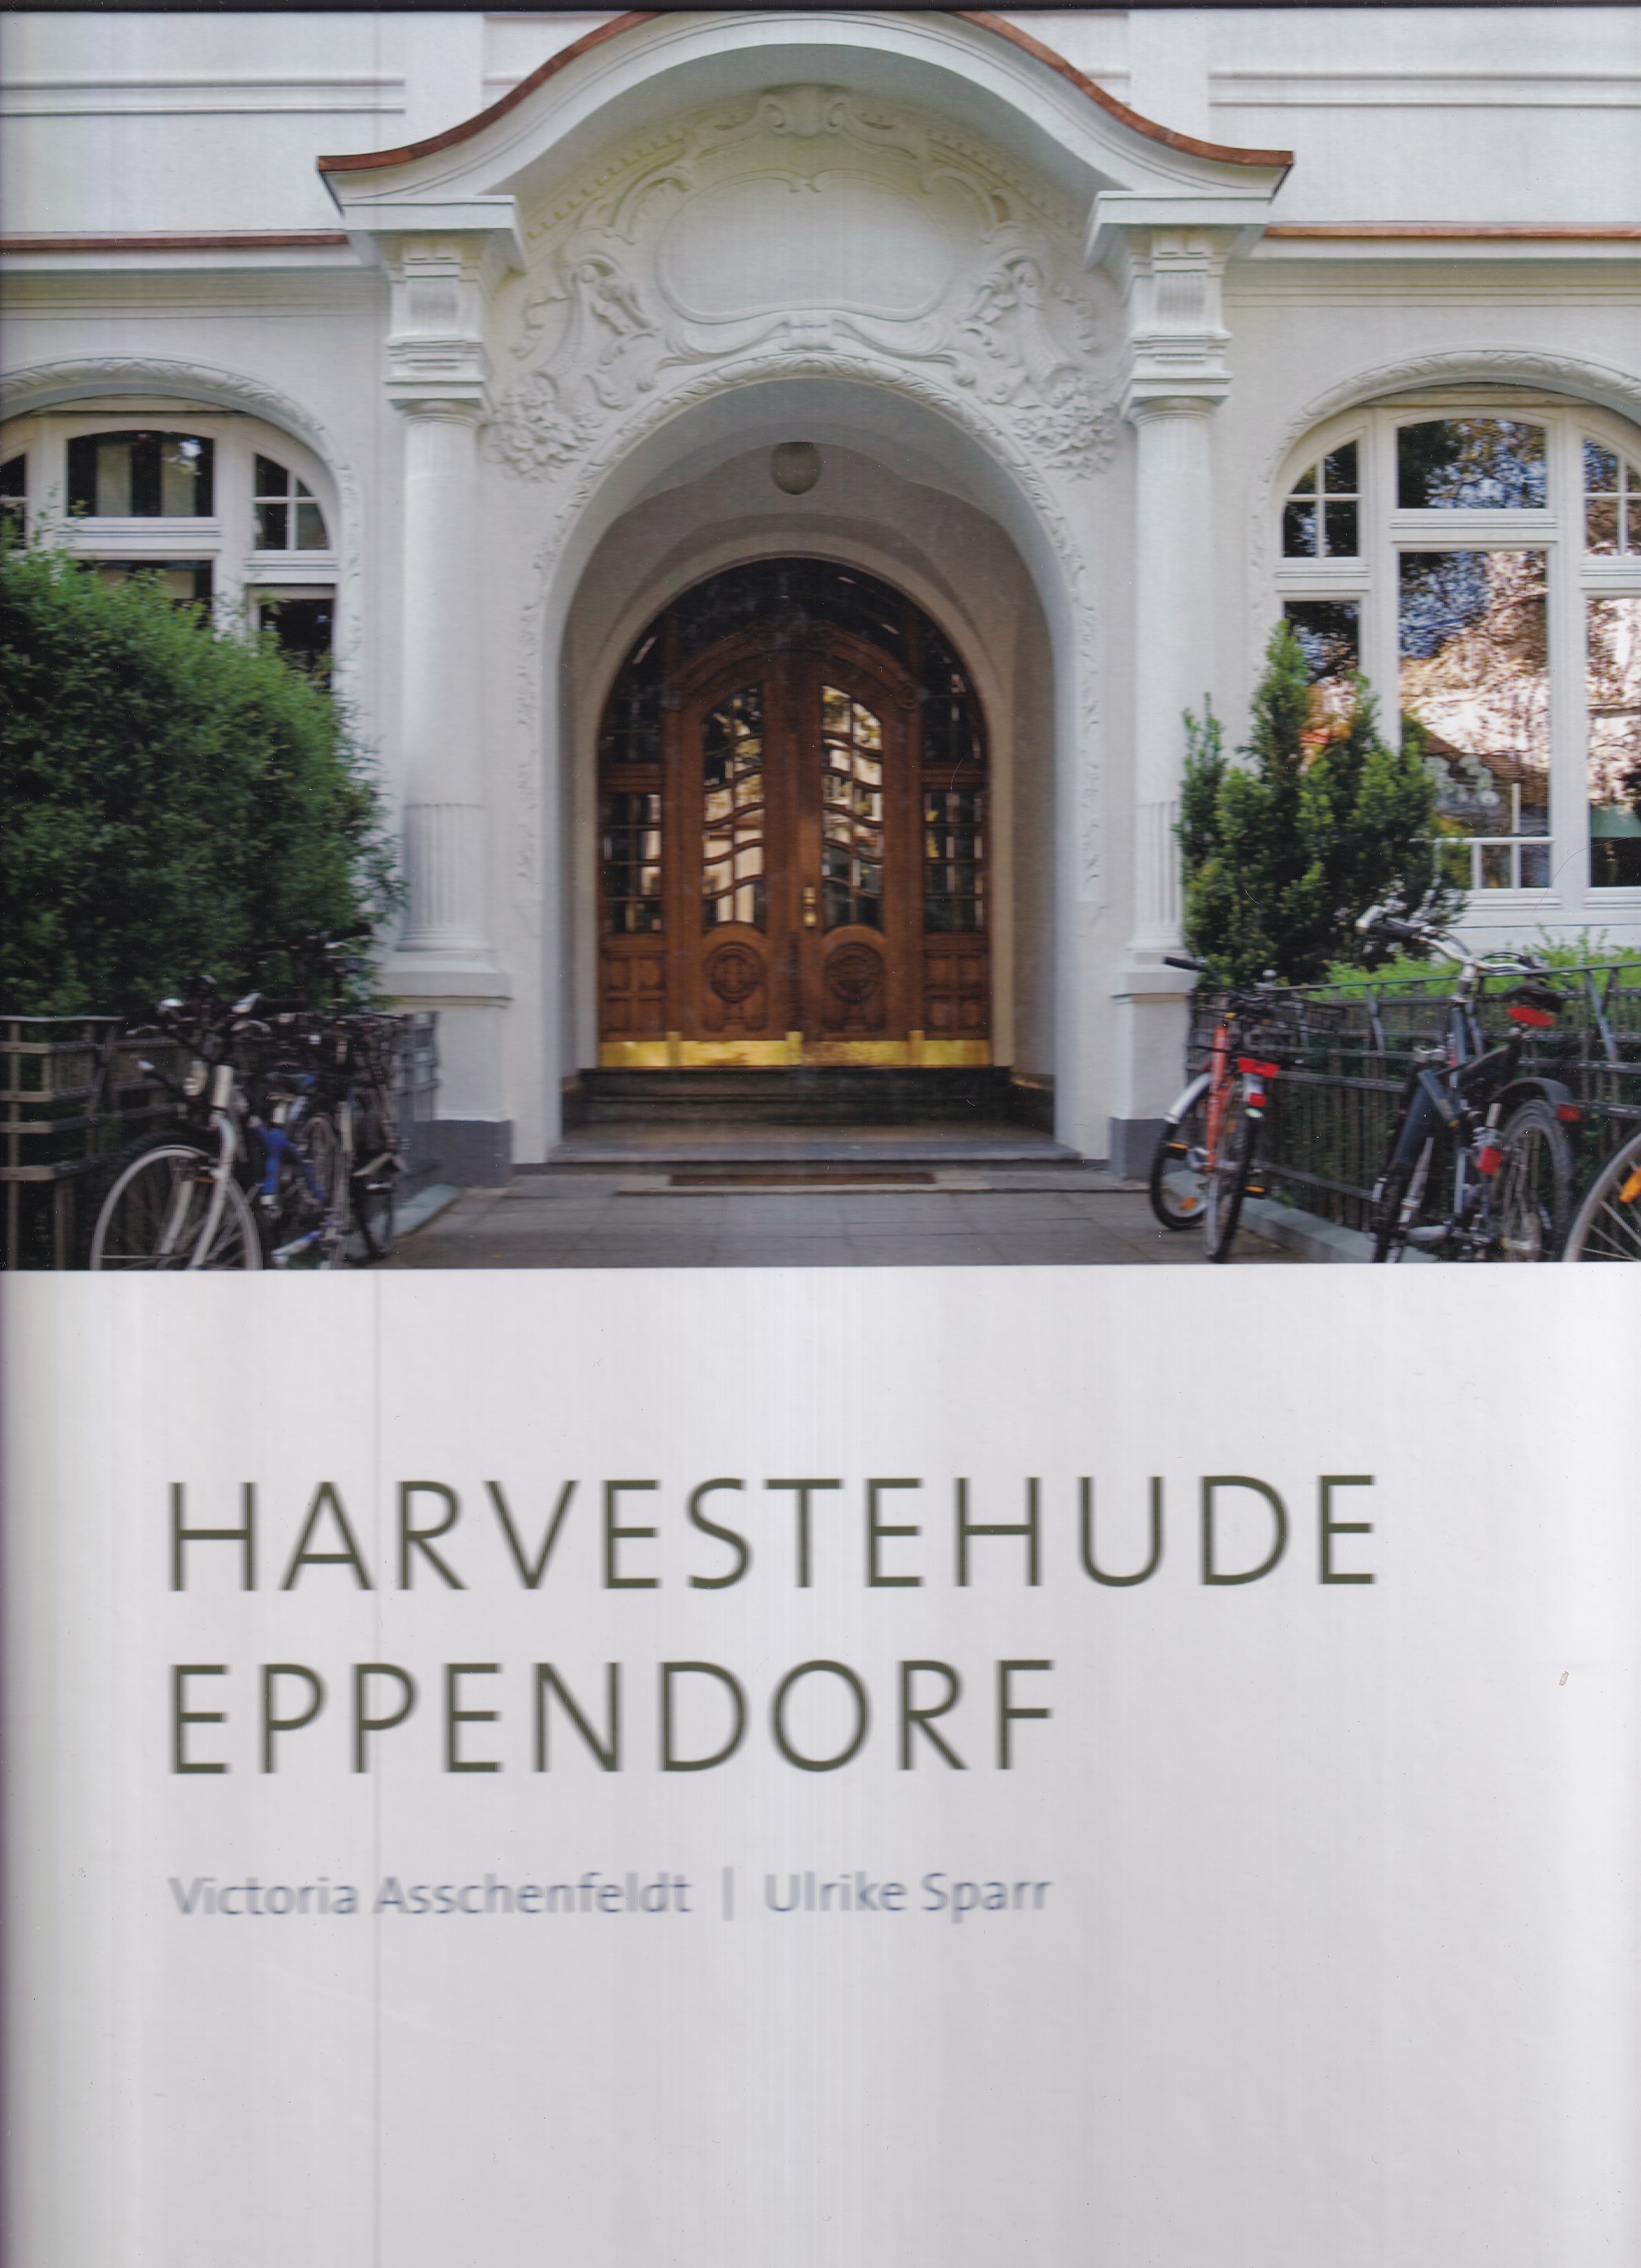 Harvestehude, Eppendorf. Leben an der Alster - Hamburg von seiner besten Seite. Fotografiert von Claudia Timmann. - Asschenfeldt, Victoria / Sparr, Ulrike.